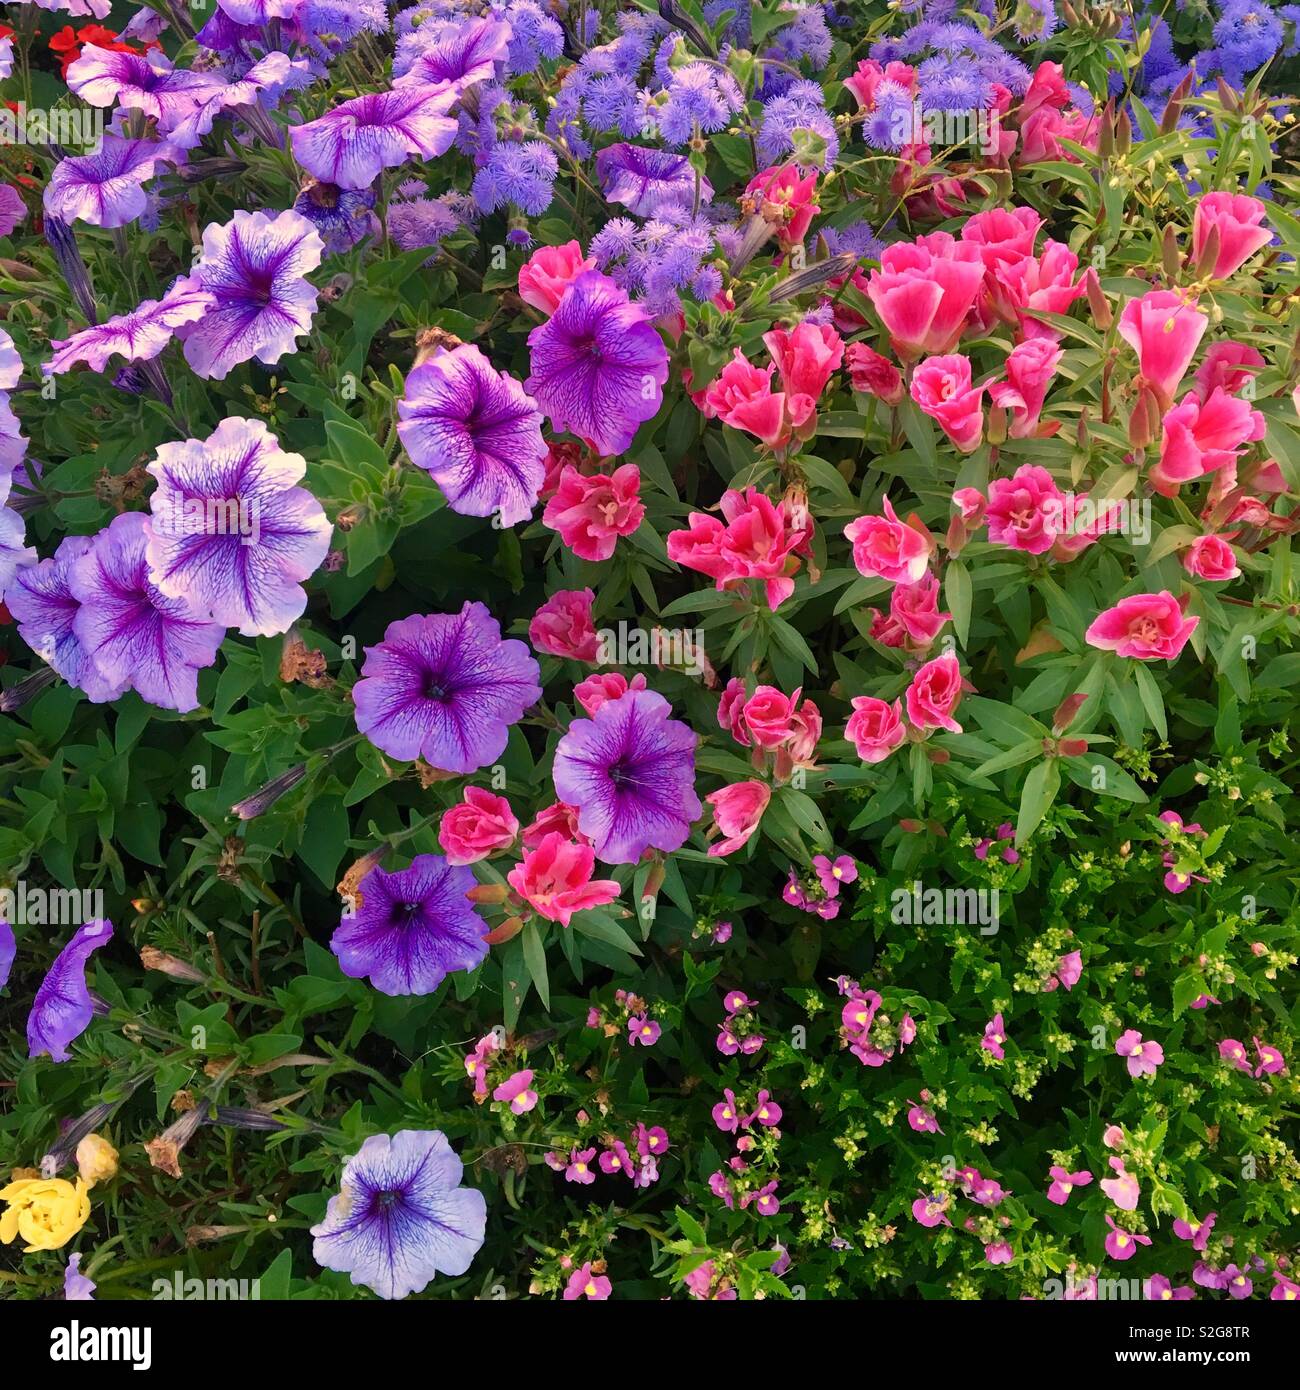 Petunias in flowering garden Stock Photo